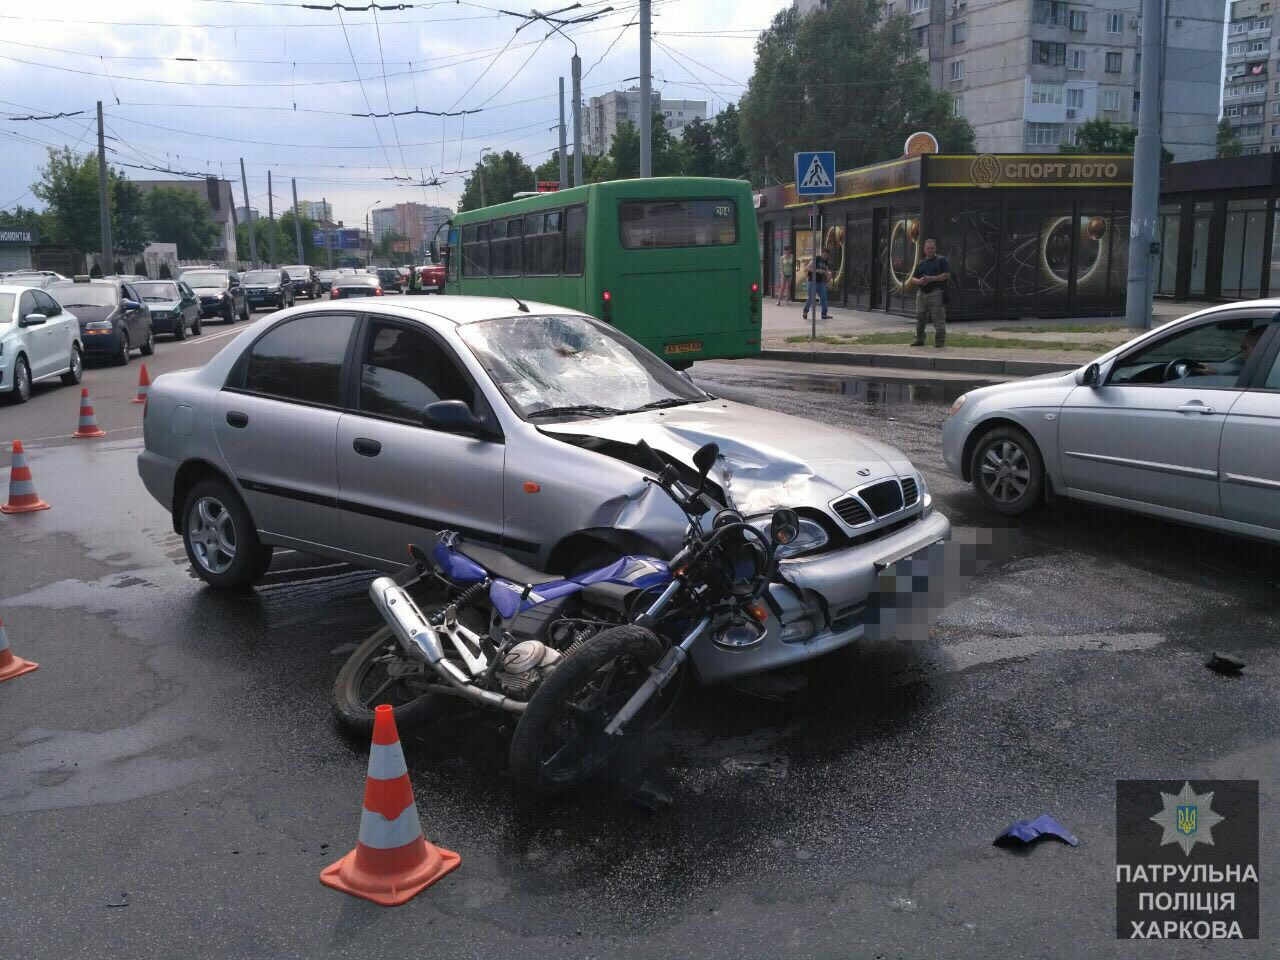 Машина сбила мотоцикл, есть пострадавшие (фото)